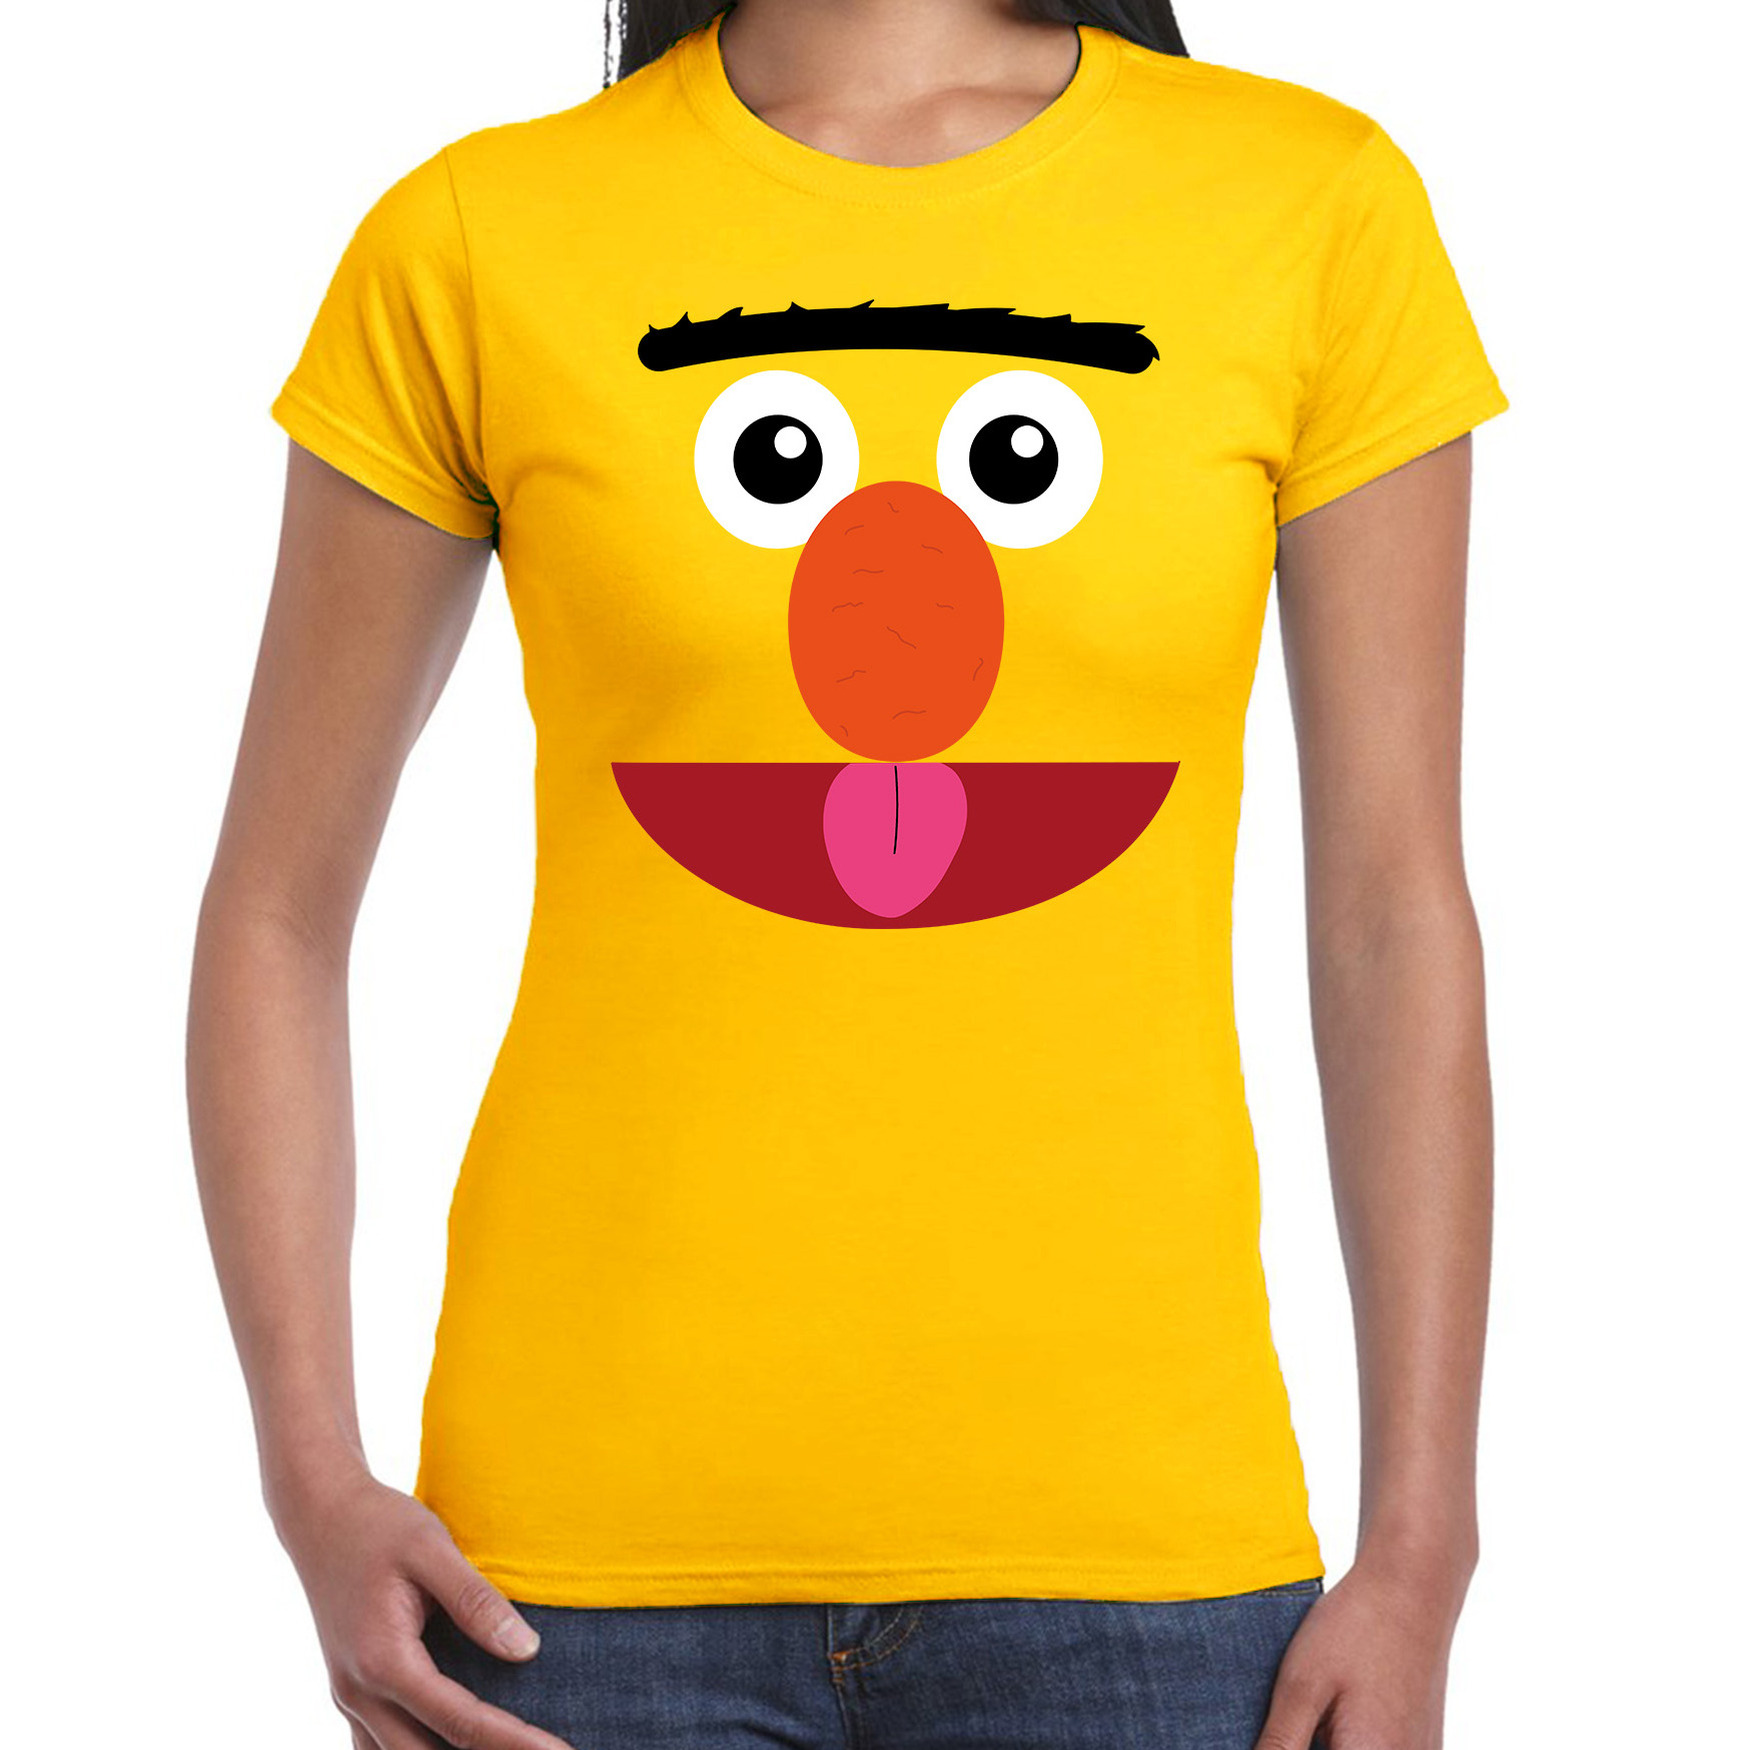 Verkleed-carnaval t-shirt geel cartoon knuffel pop voor dames Verkleed-kostuum shirts